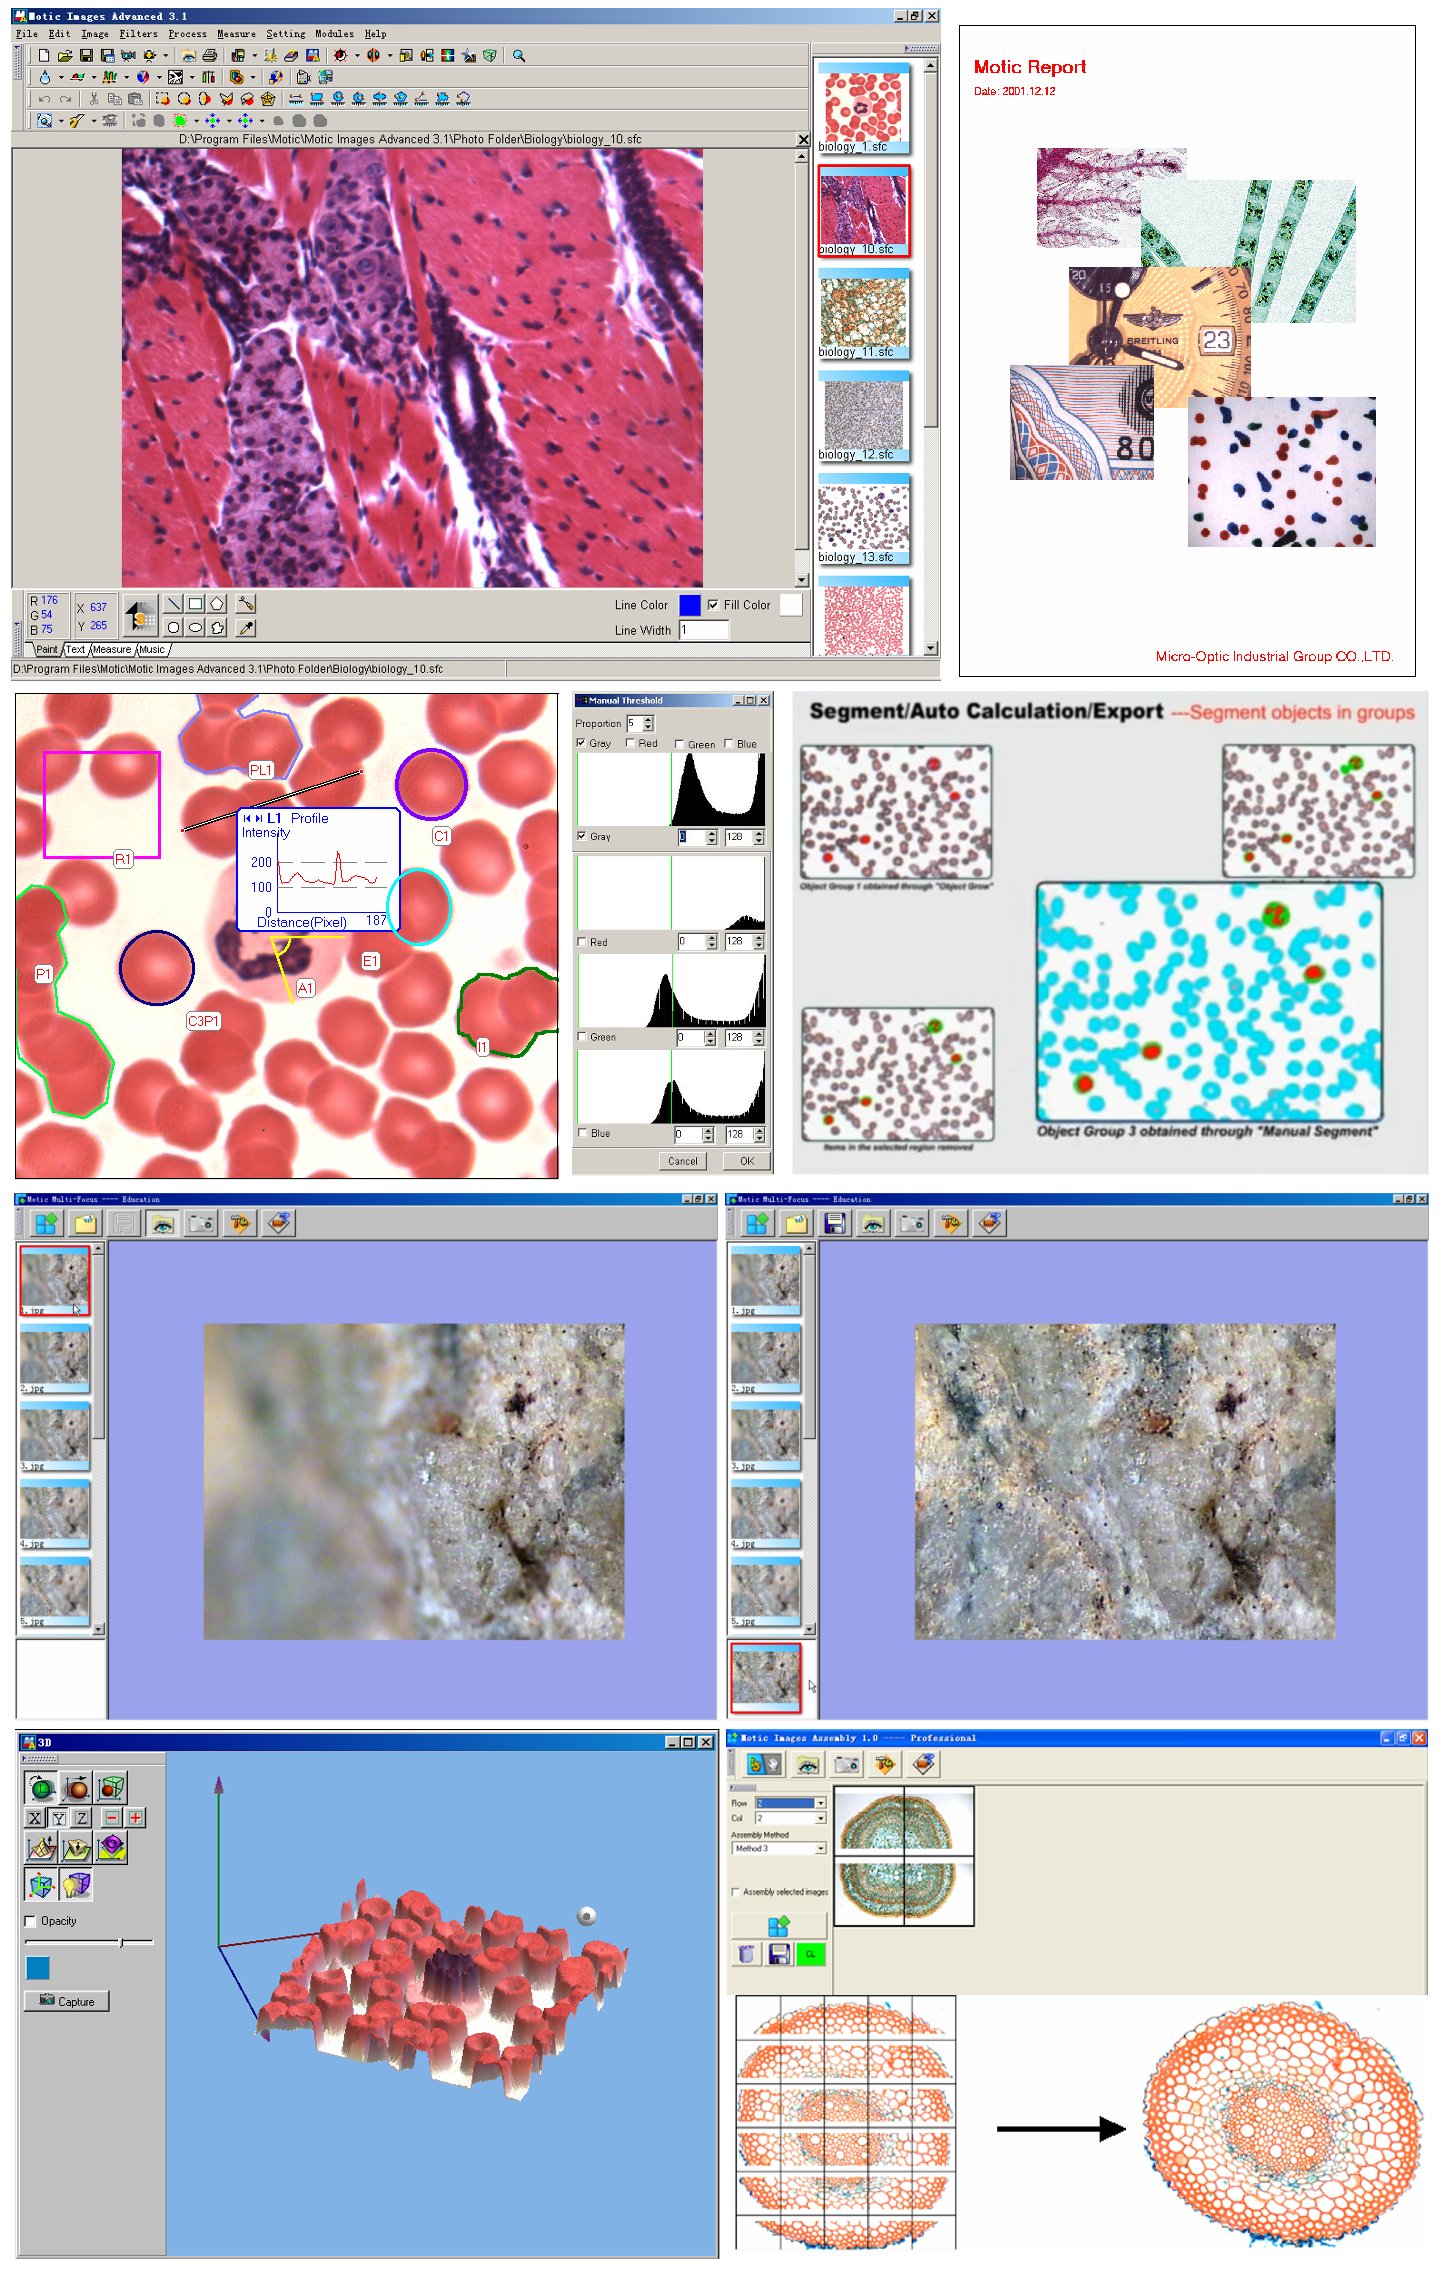 Videomicroscopía - Software de Tratamiento Avanzado de Imágenes v3.2 MI Adv 3.2